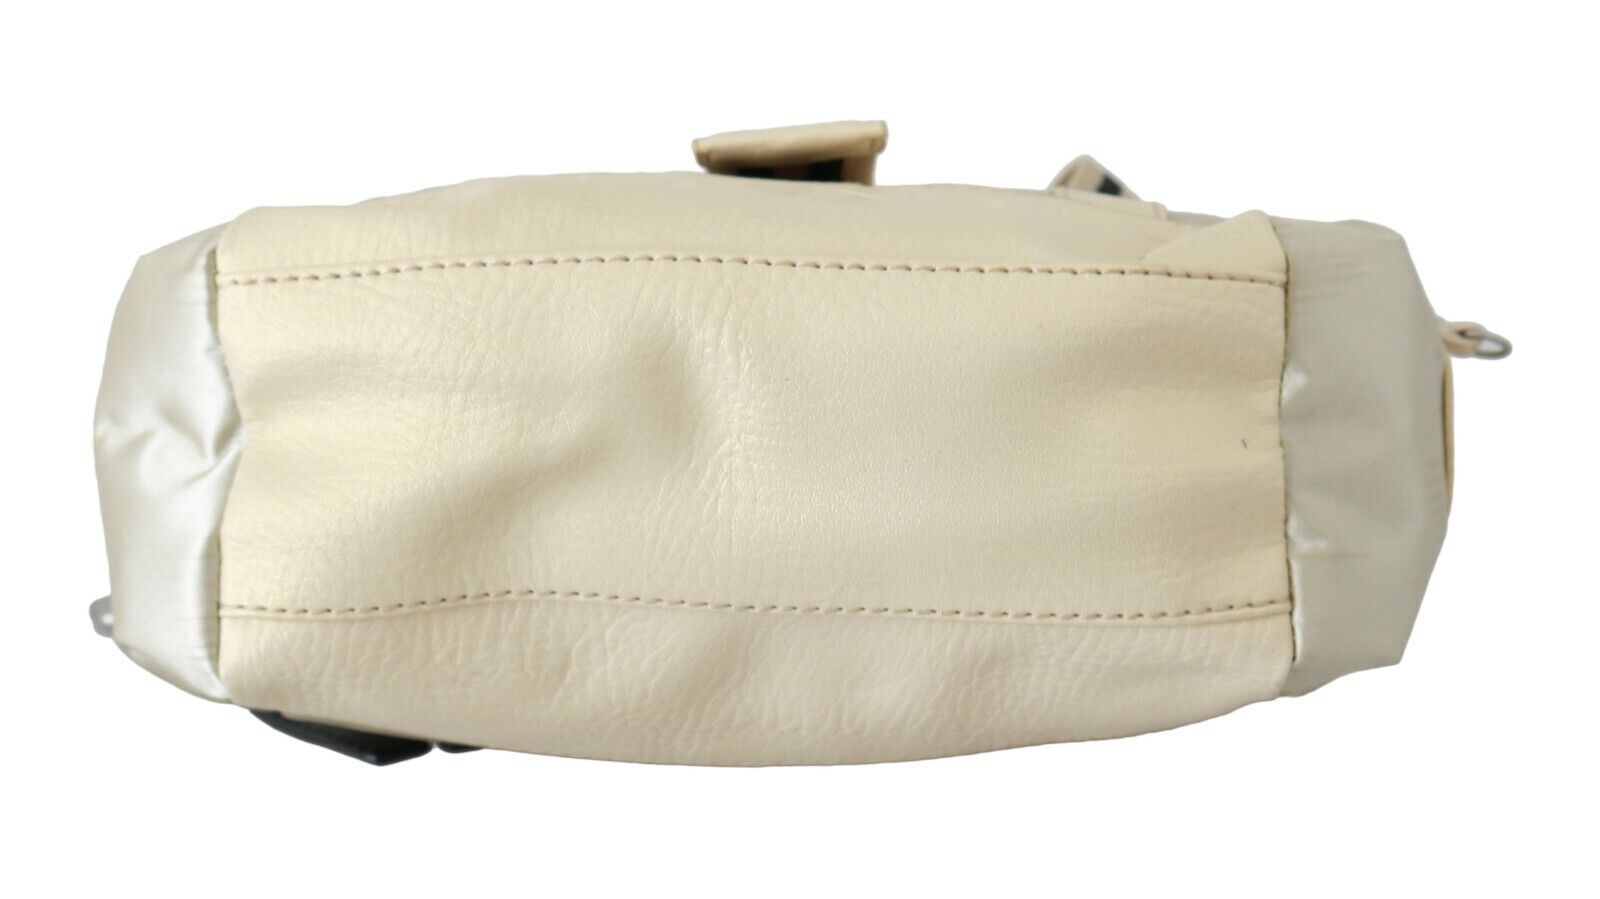 WAYFARER Beige Handbag Shoulder Tote Fabric Purse - Fizigo